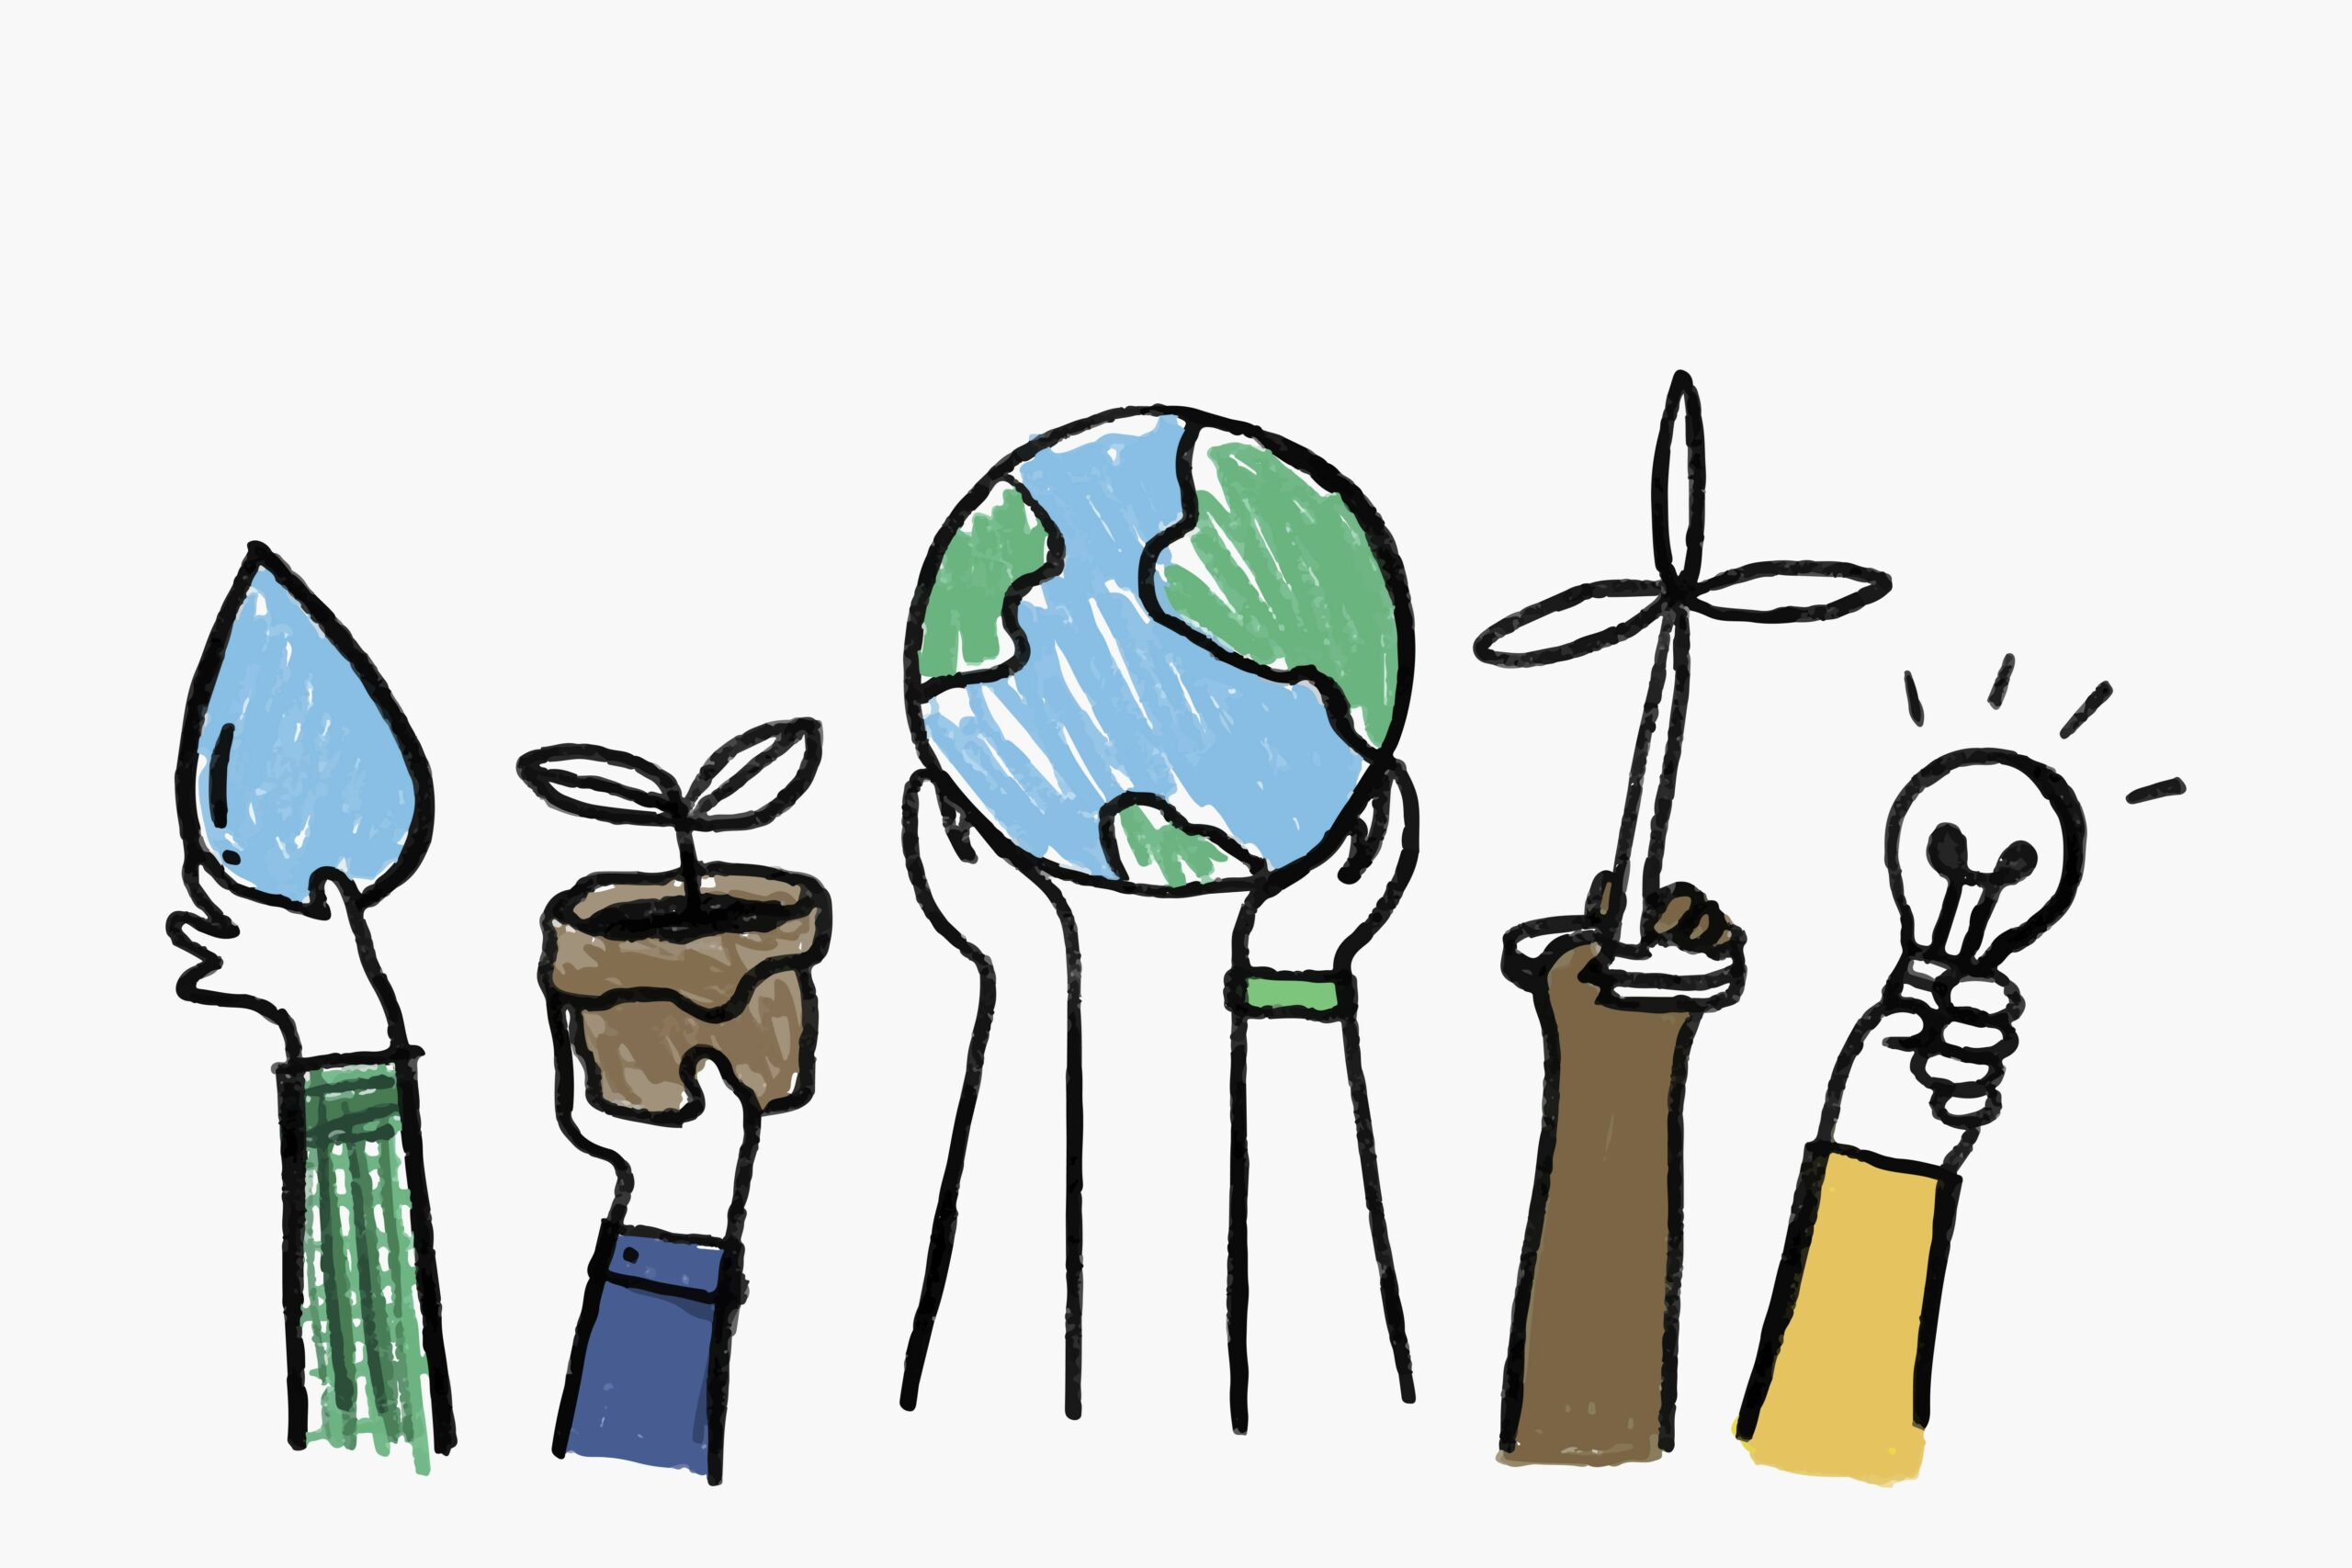 Environment doodle vector, renewable energy concept